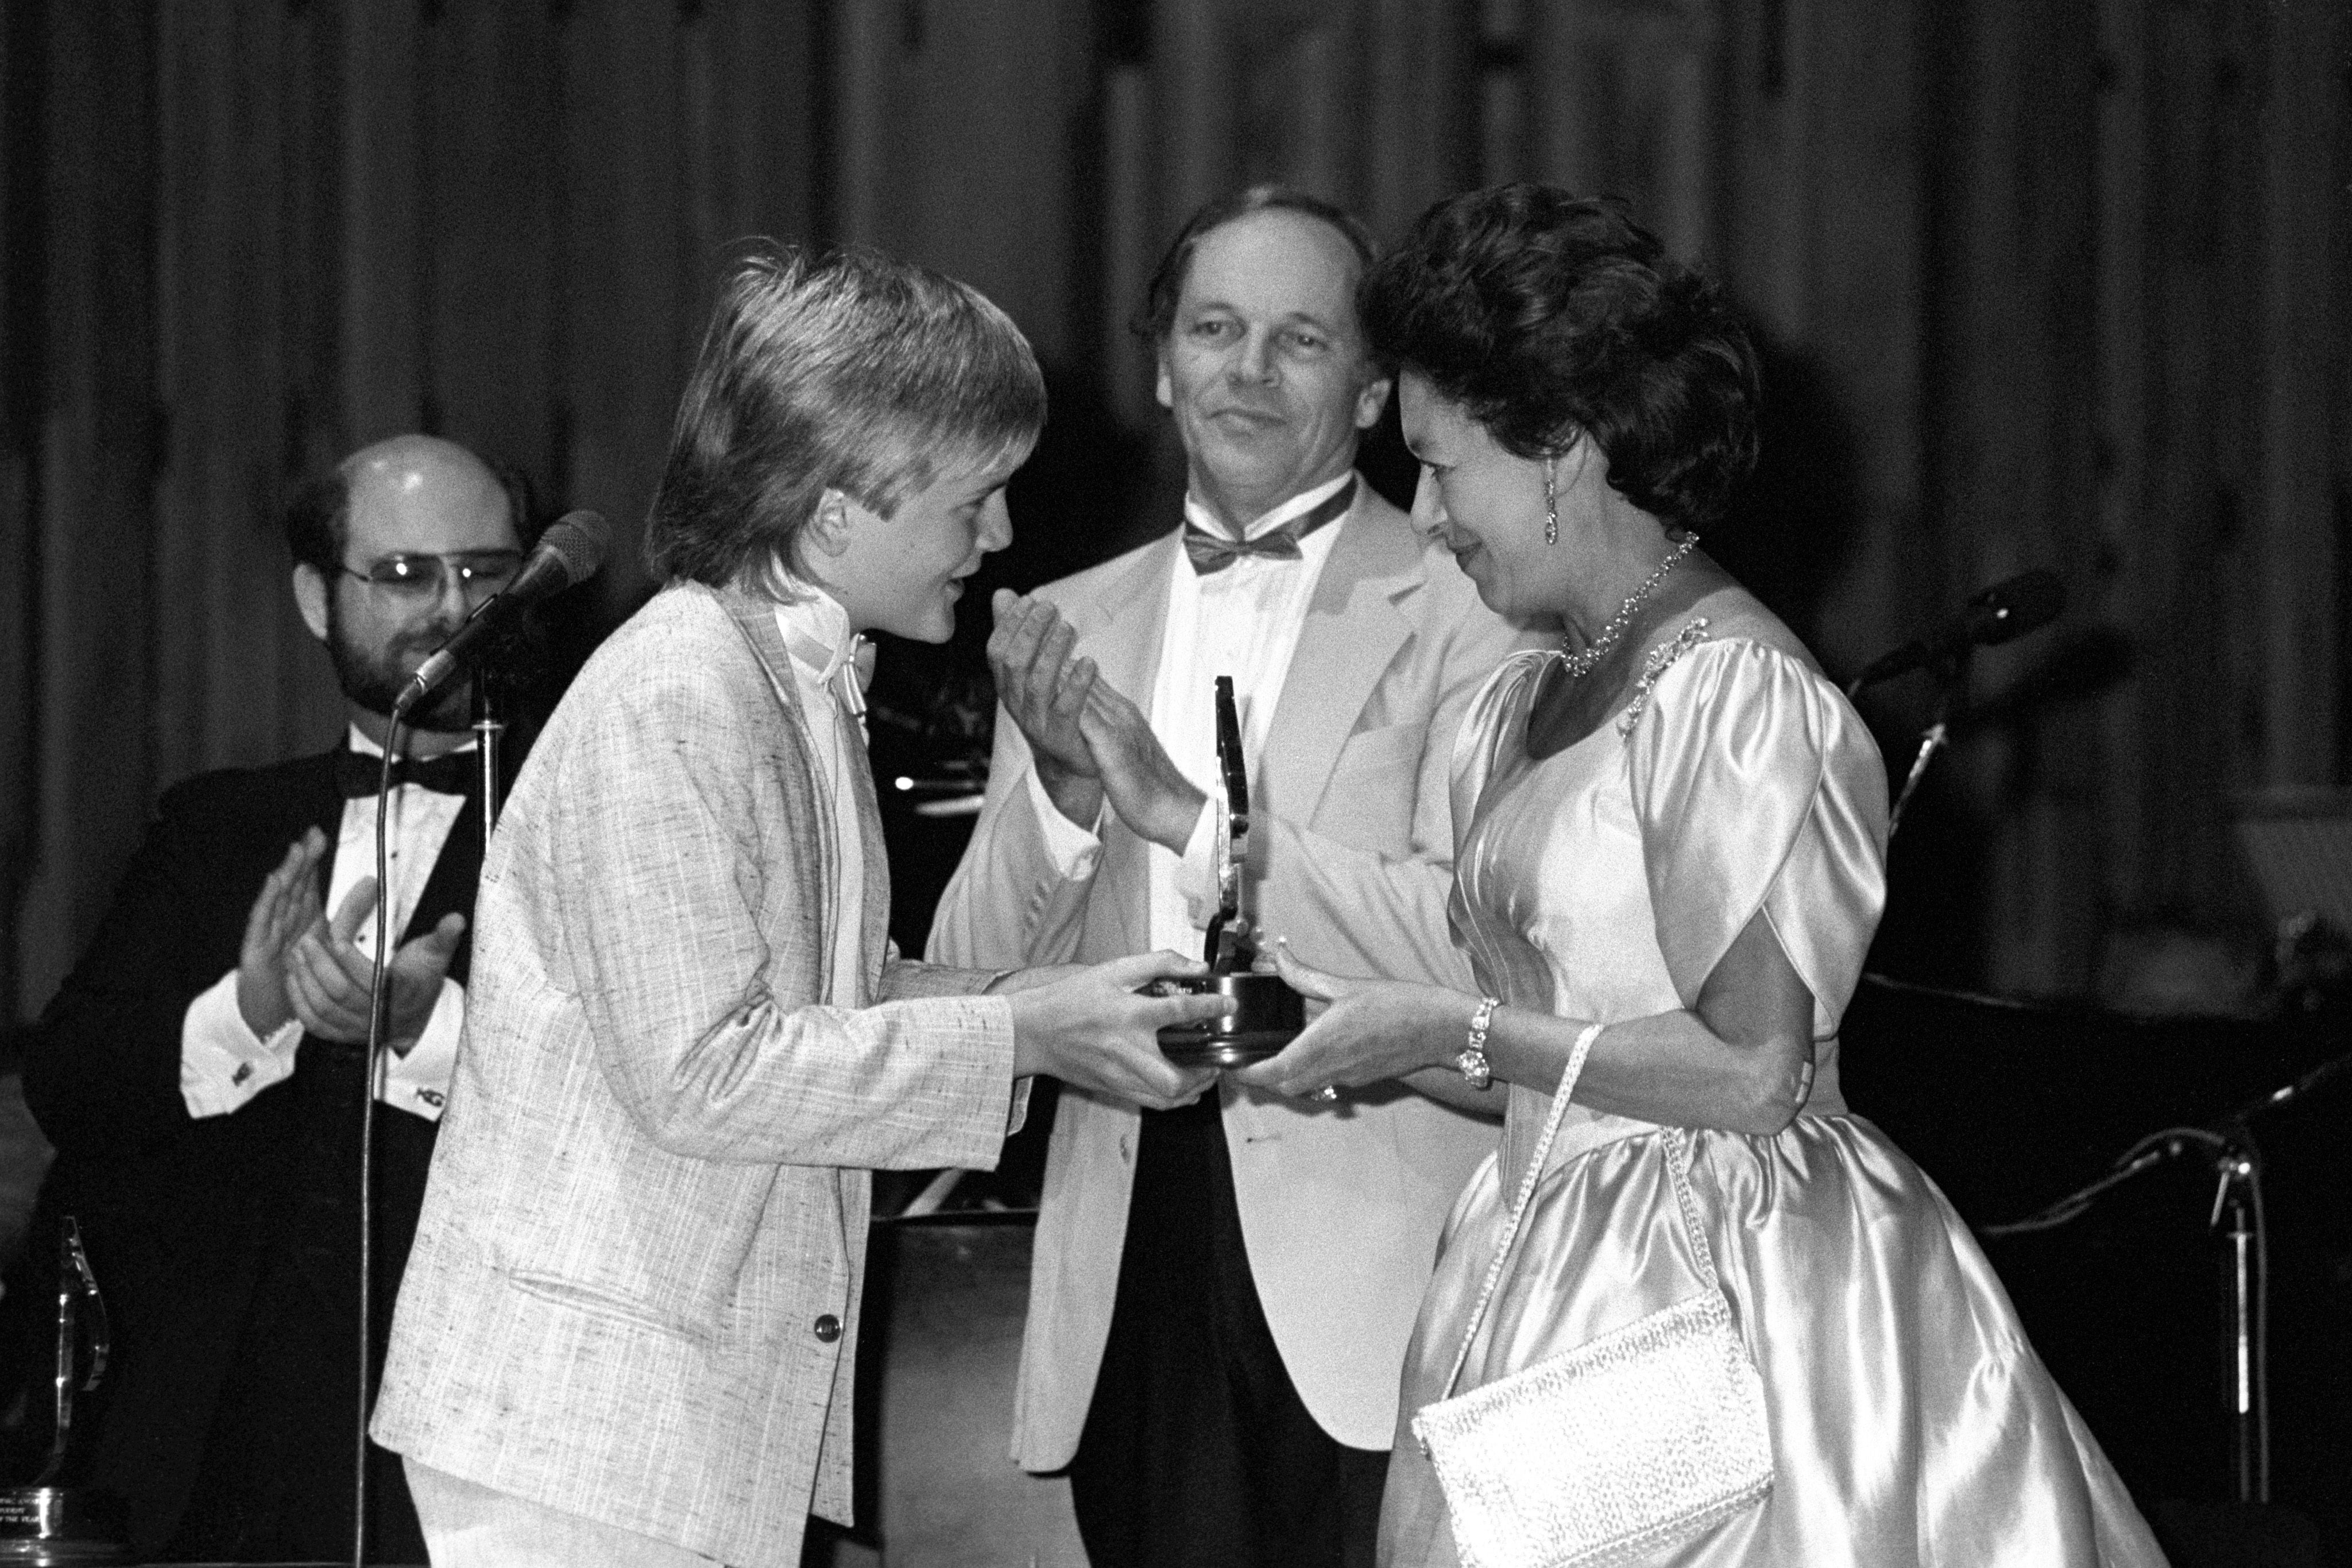 Jones meets Princess Margaret in 1986